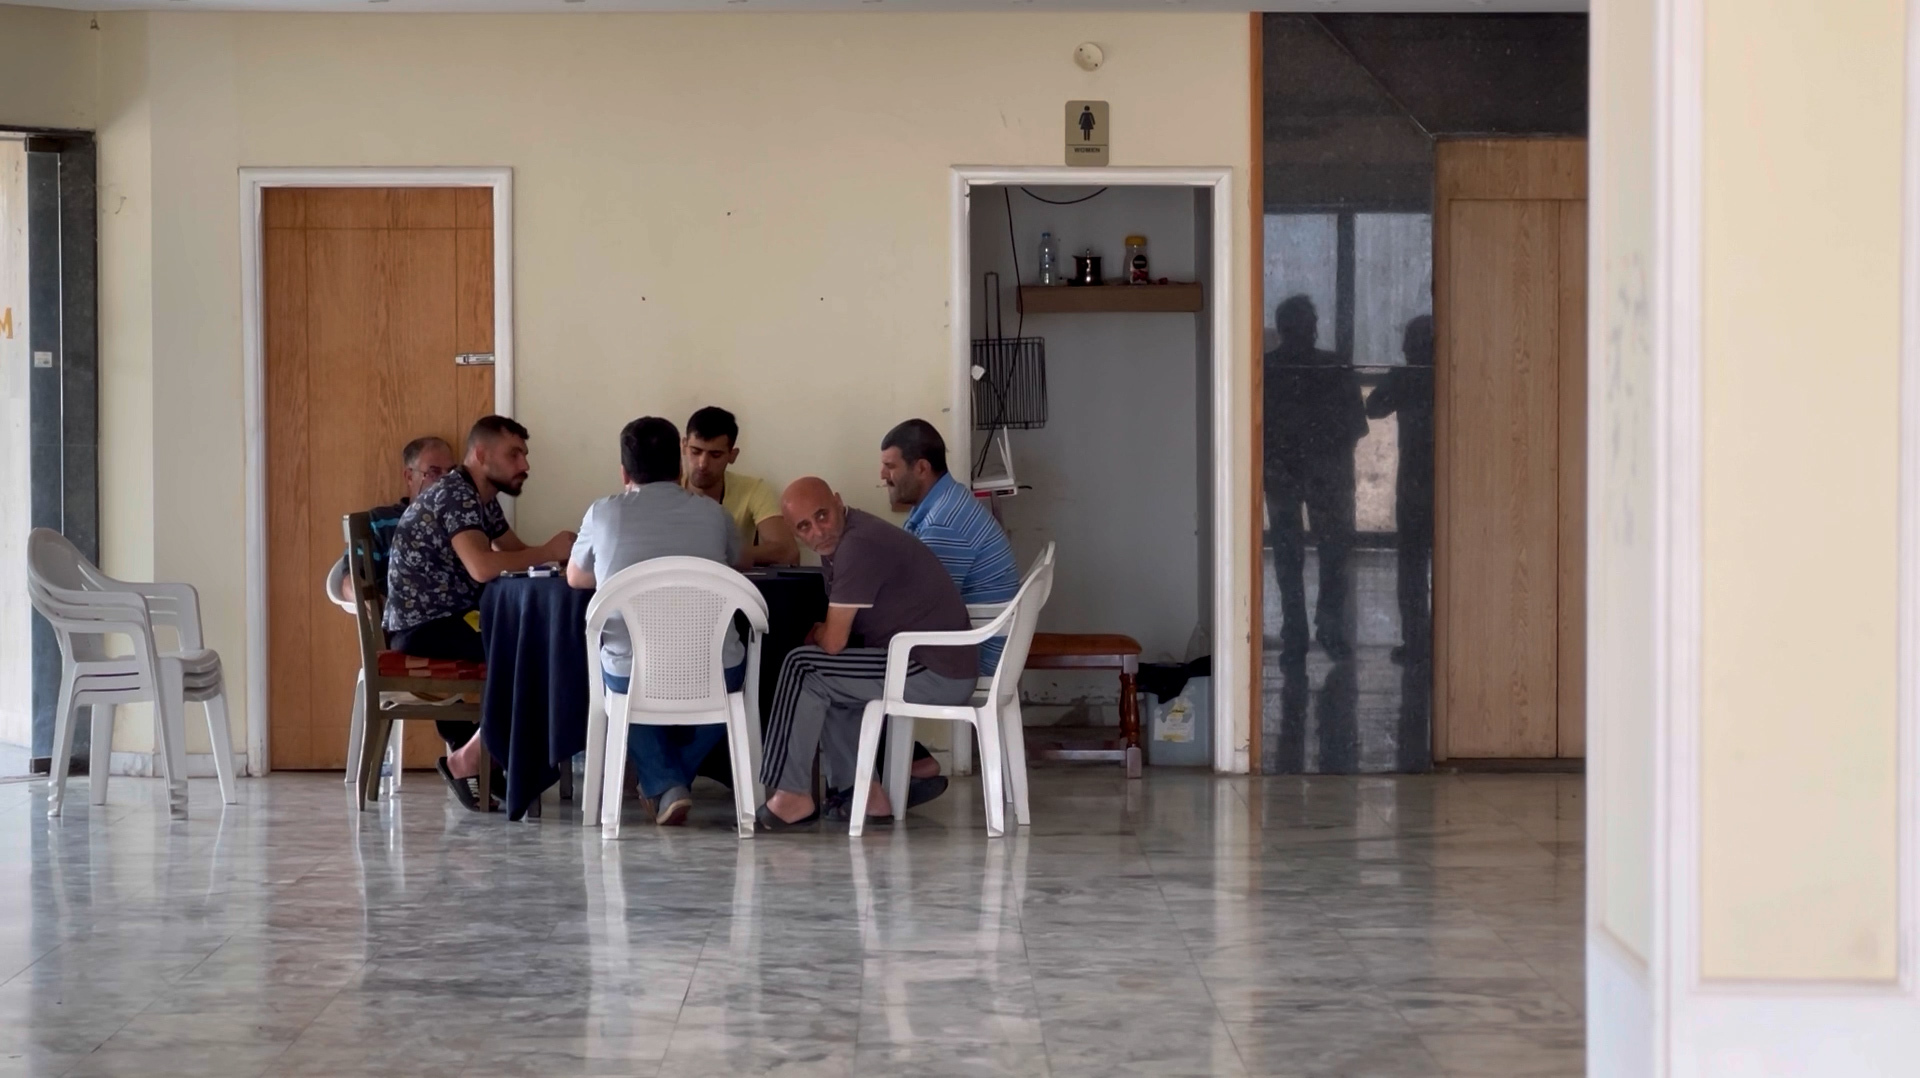 فنادق جنوب لبنان.. من مراكز للحجر الصحي إلى مأوى للنازحين | سياسة – البوكس نيوز